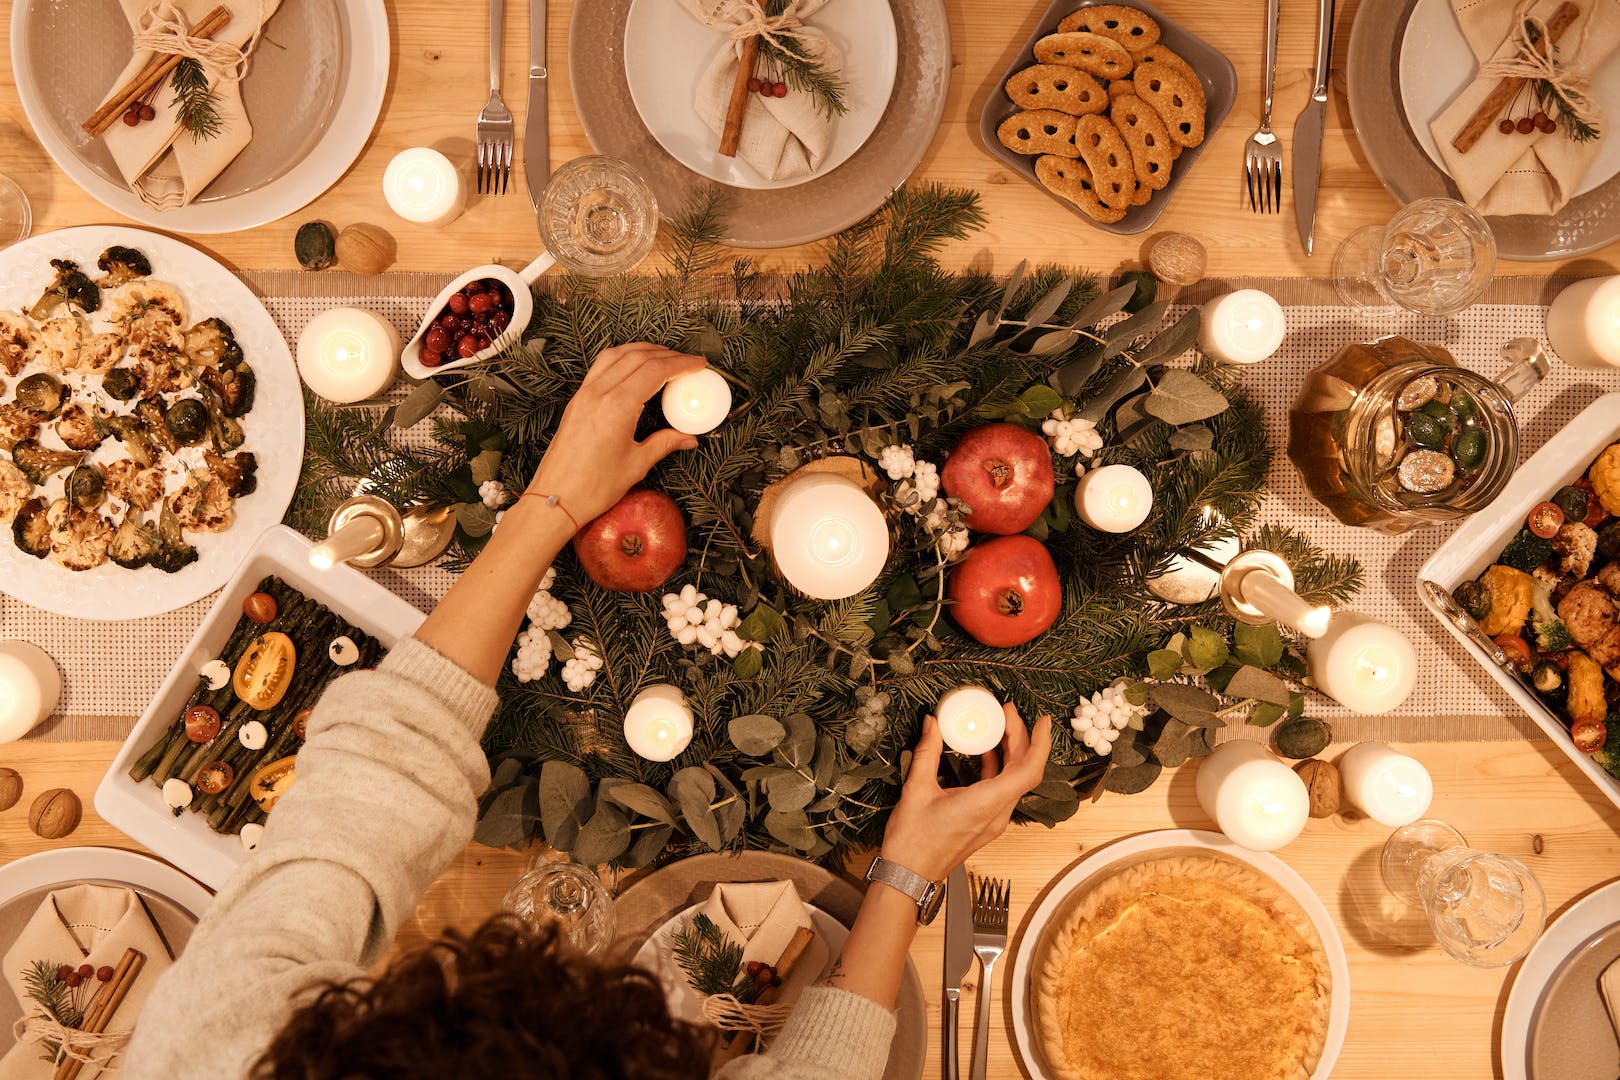 Le repas de Noël avec ses 13 desserts provençaux